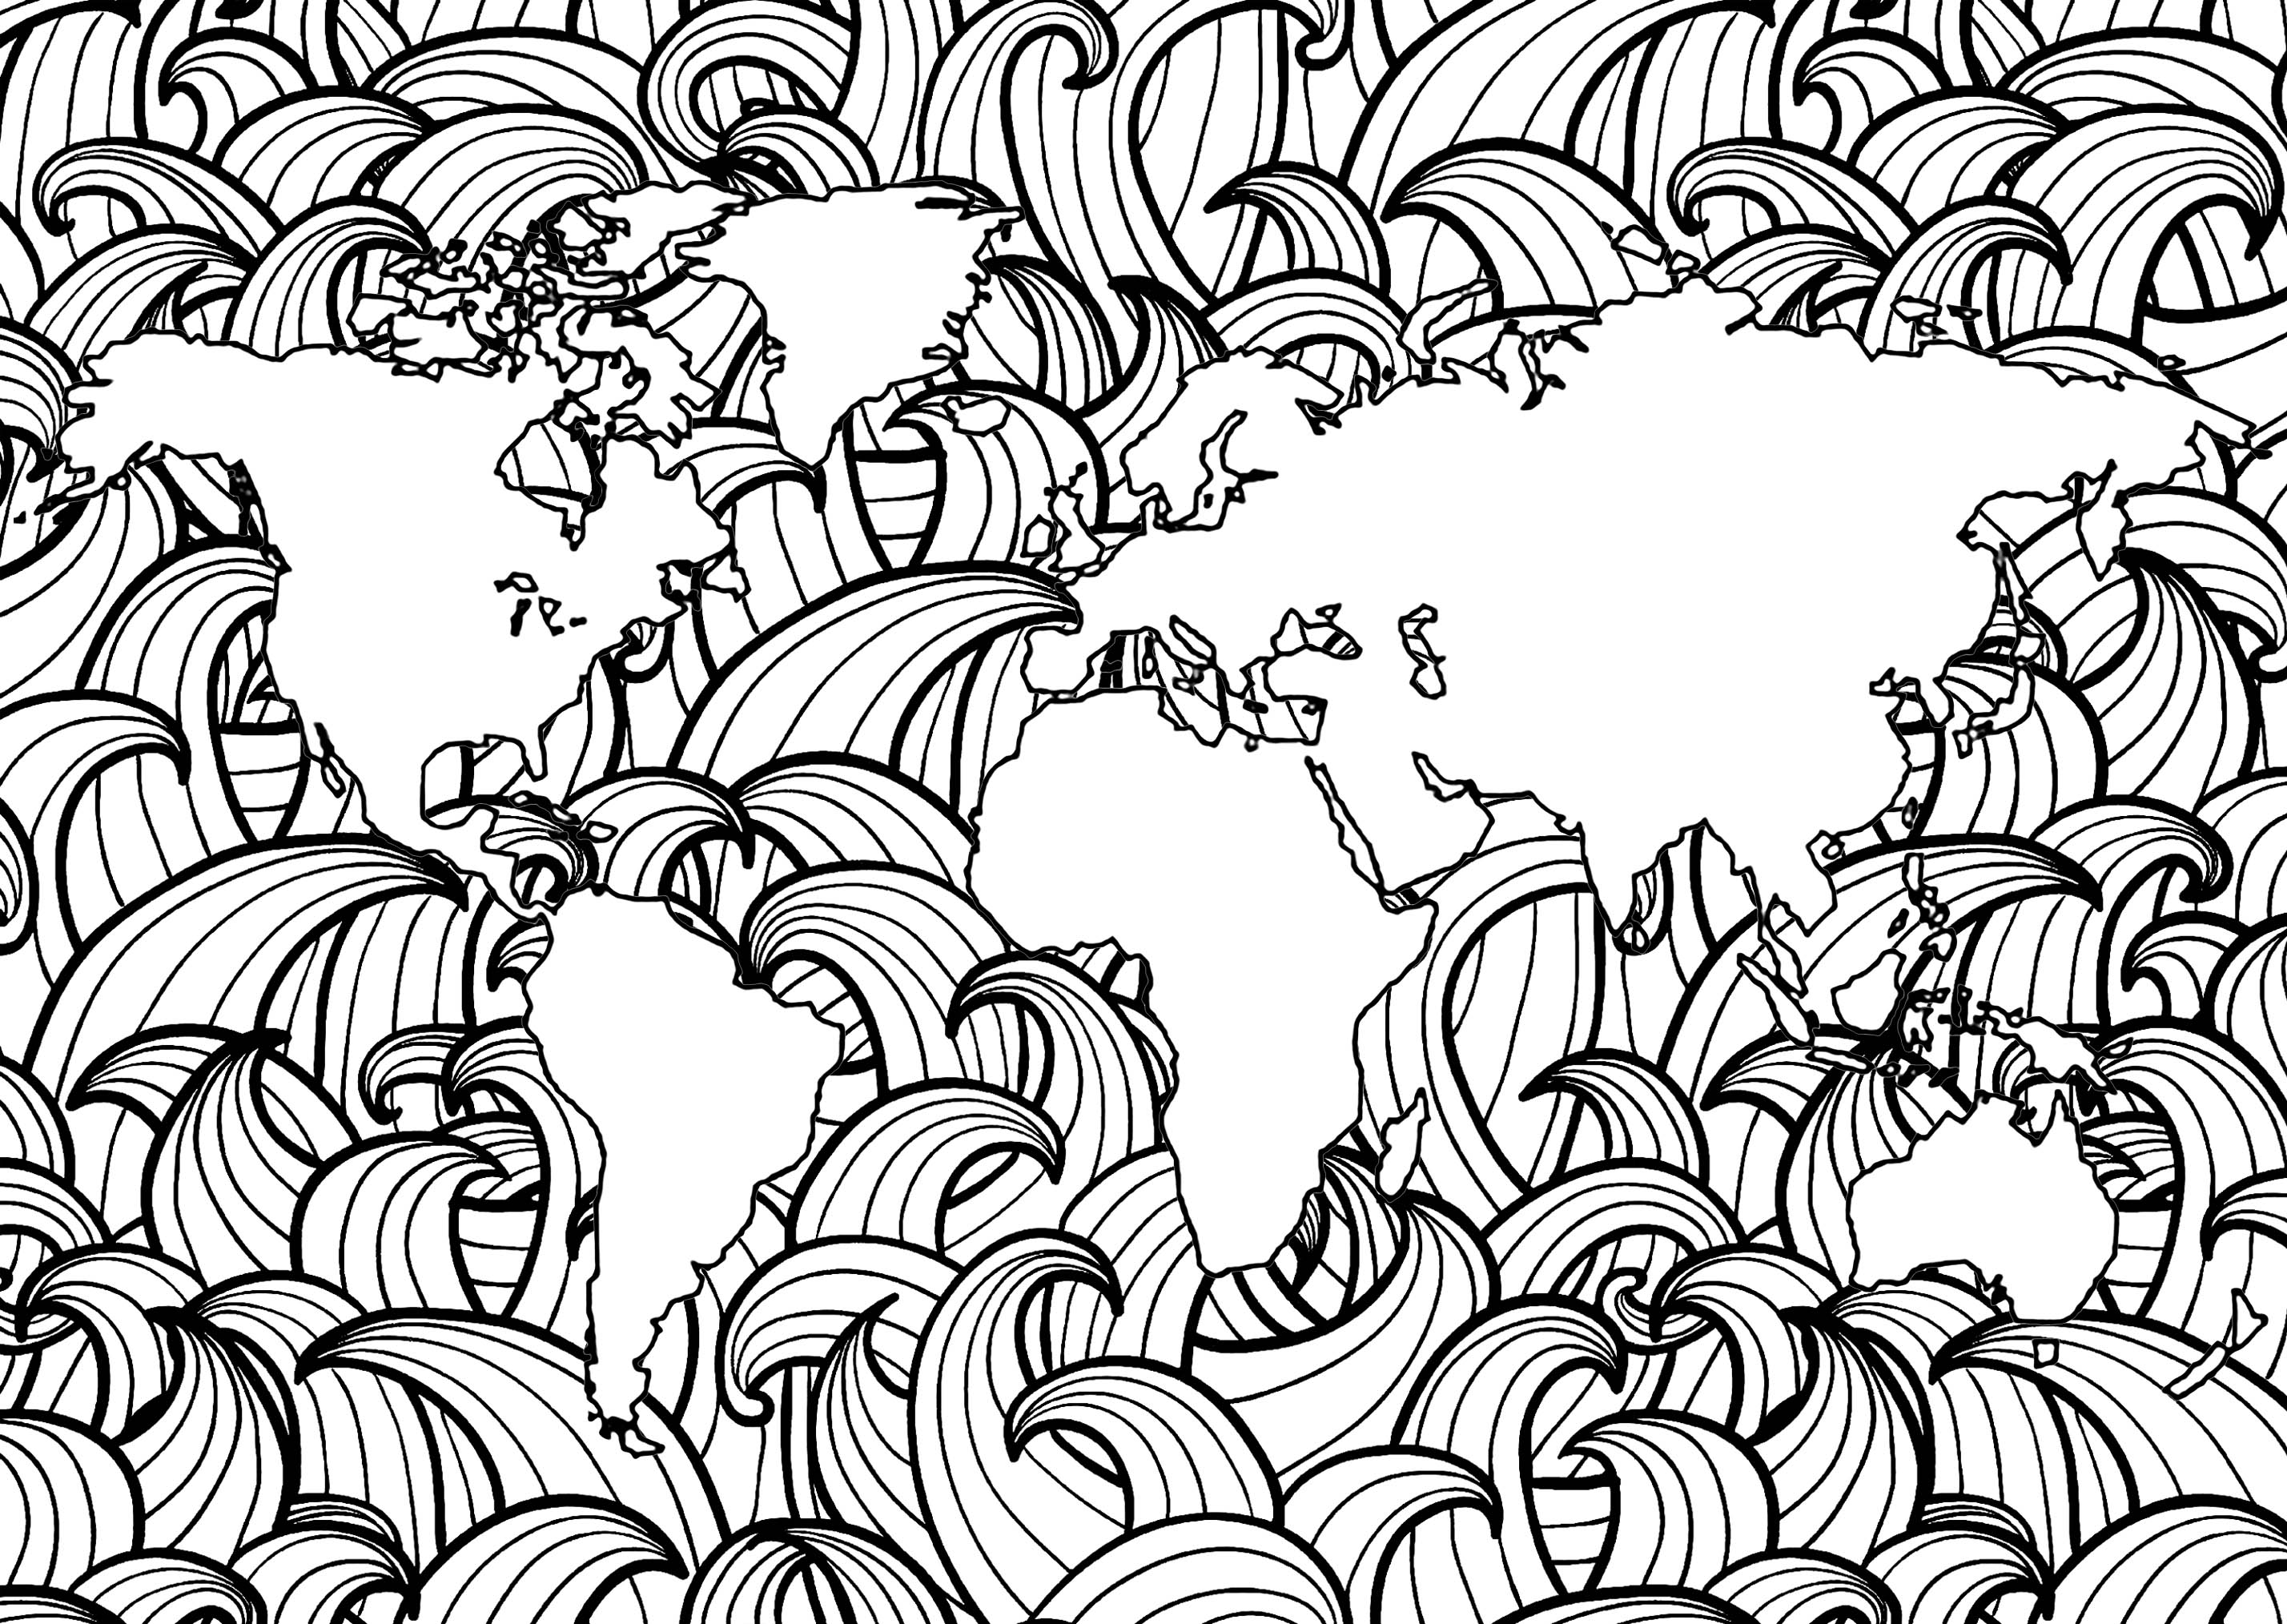 Planeta Terra com padrões simples de ondas nos mares, Artista : Art'Isabelle